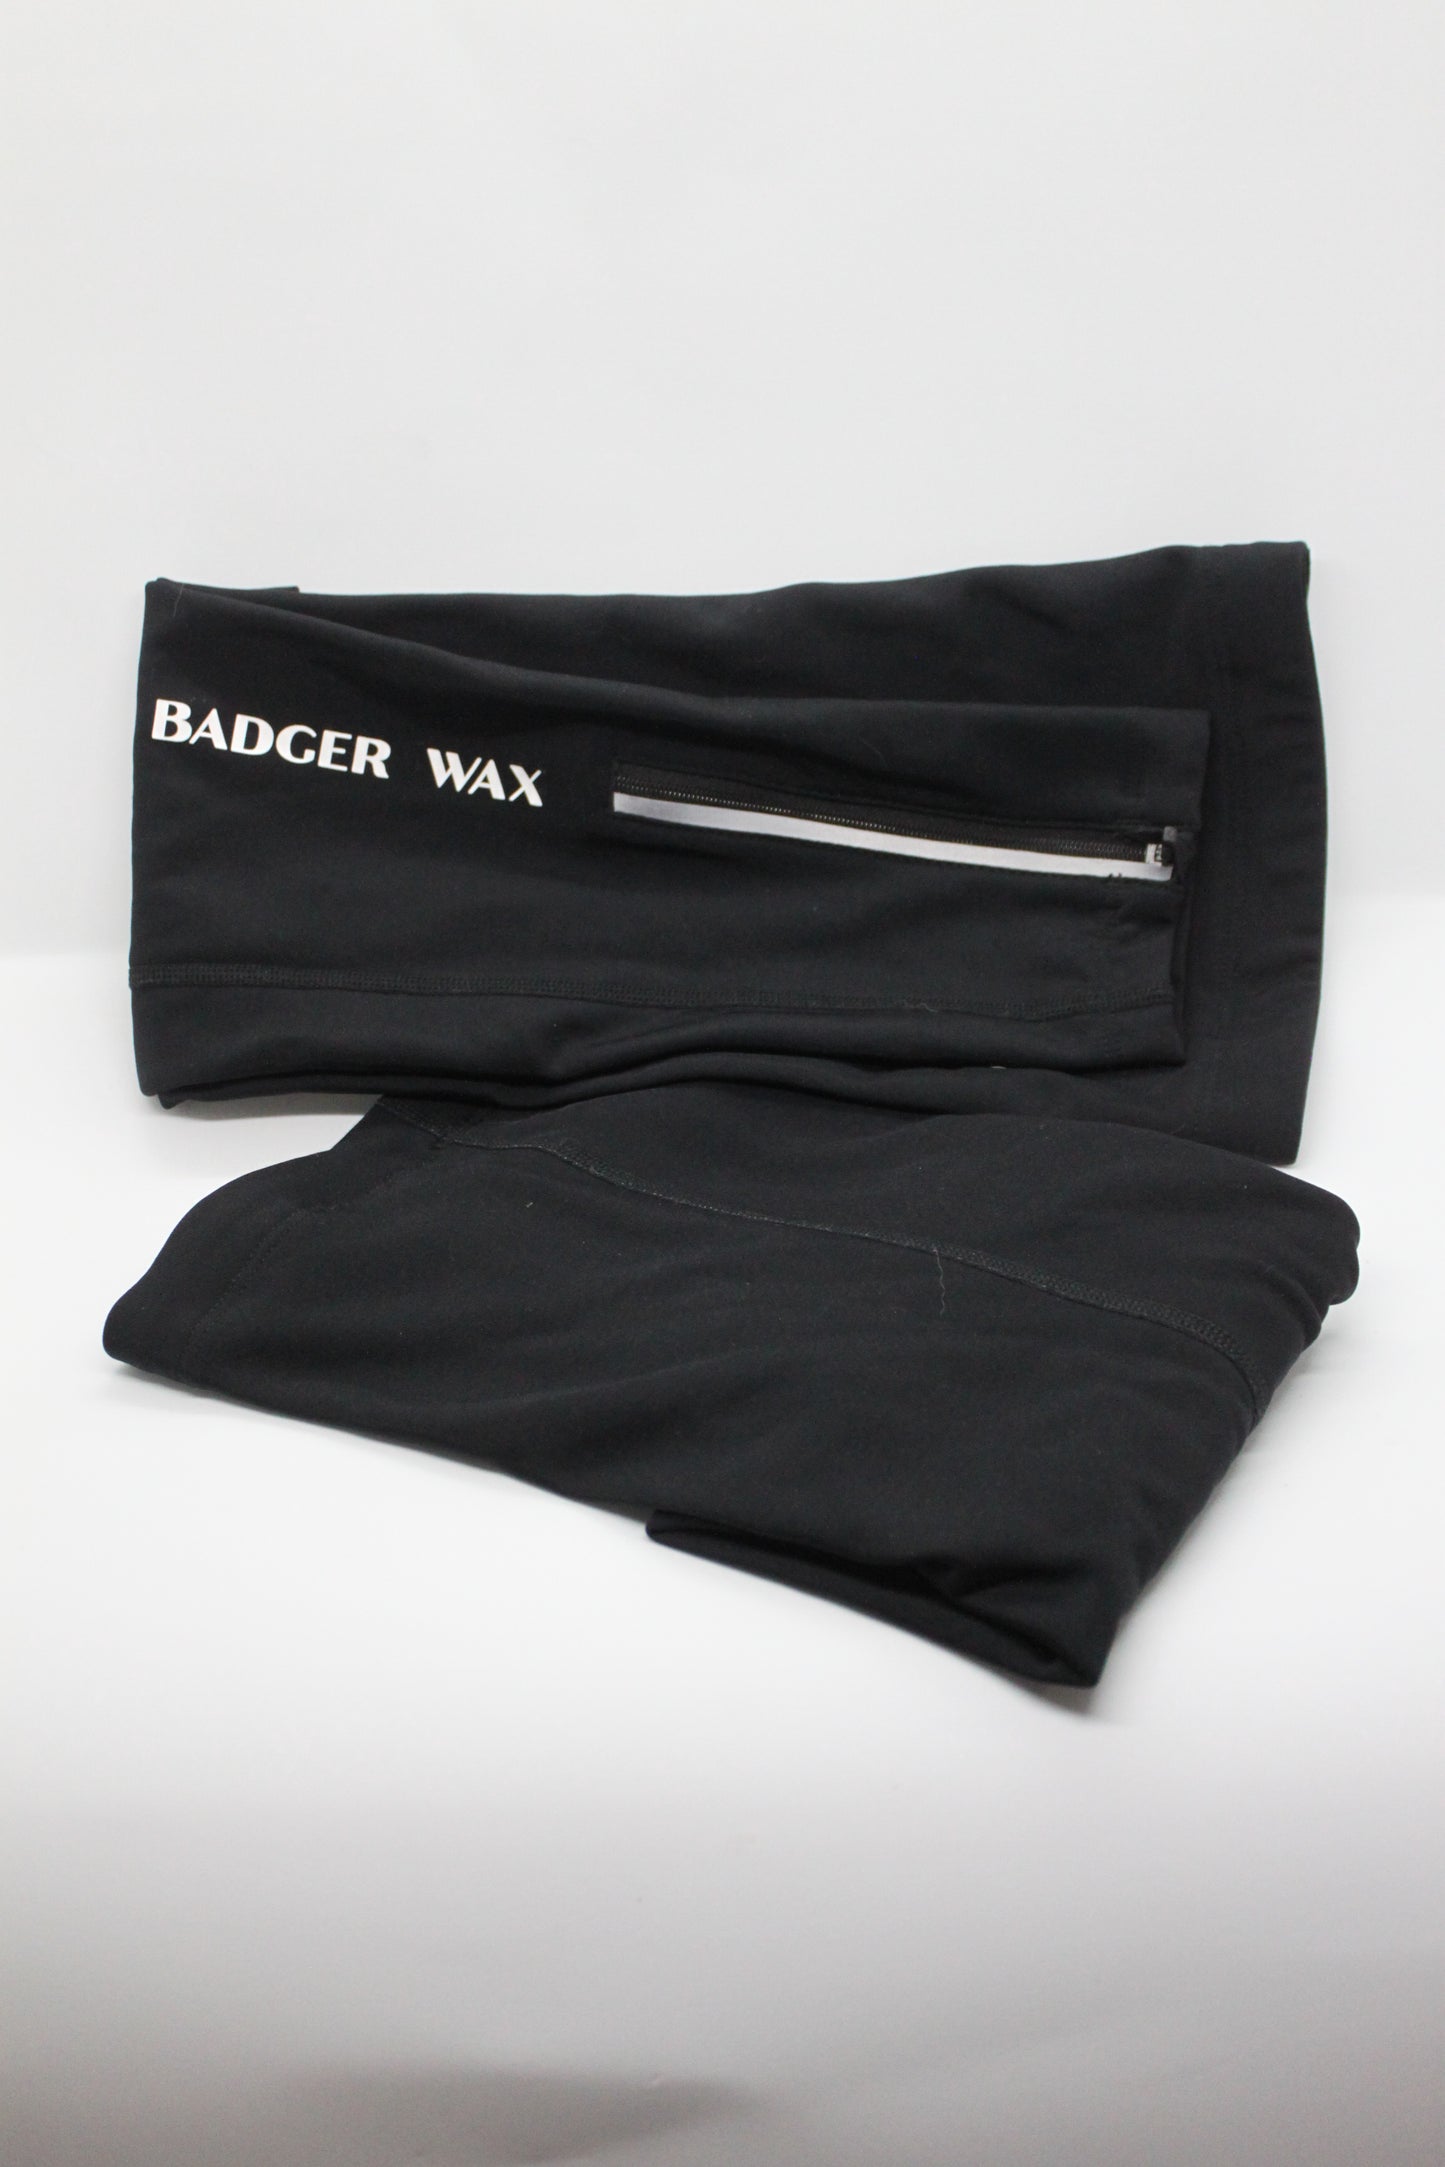 Badger Wax Black Leg Warmers - Badger Wax